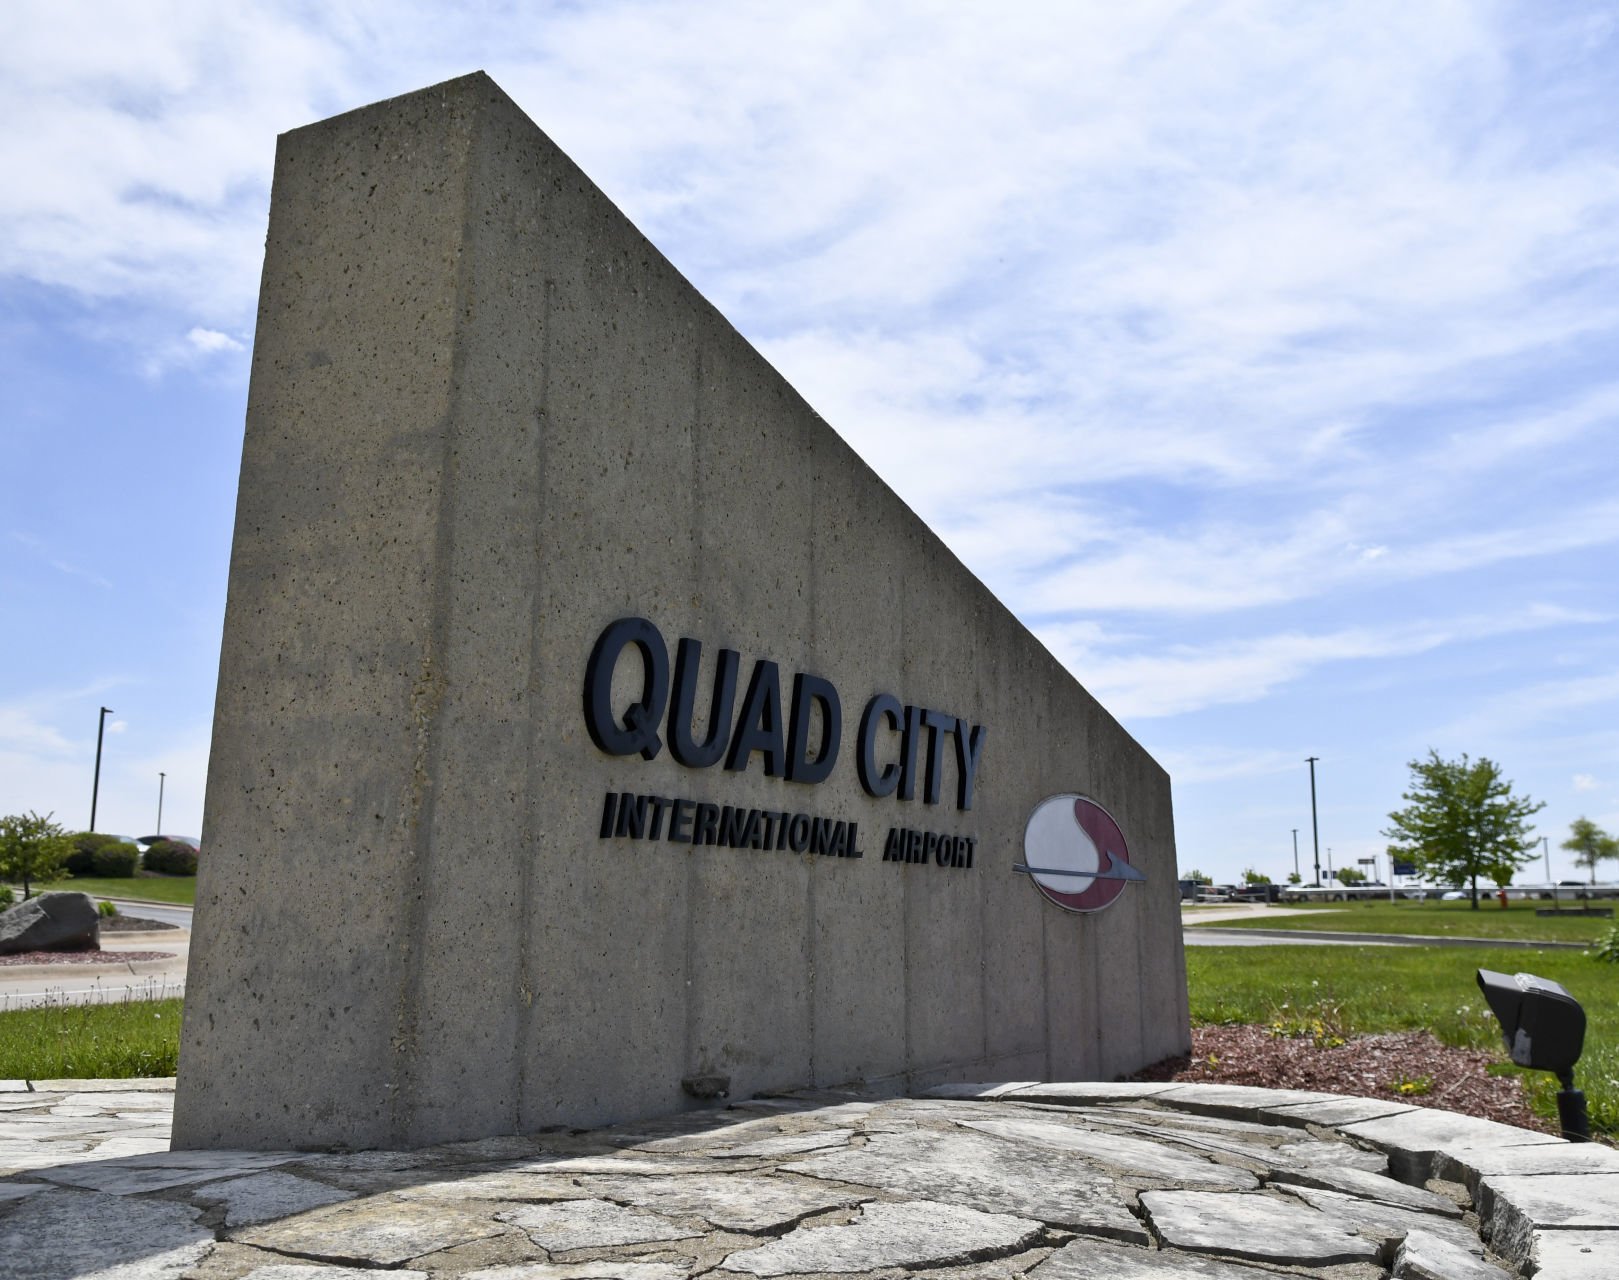 quad city airport car rental